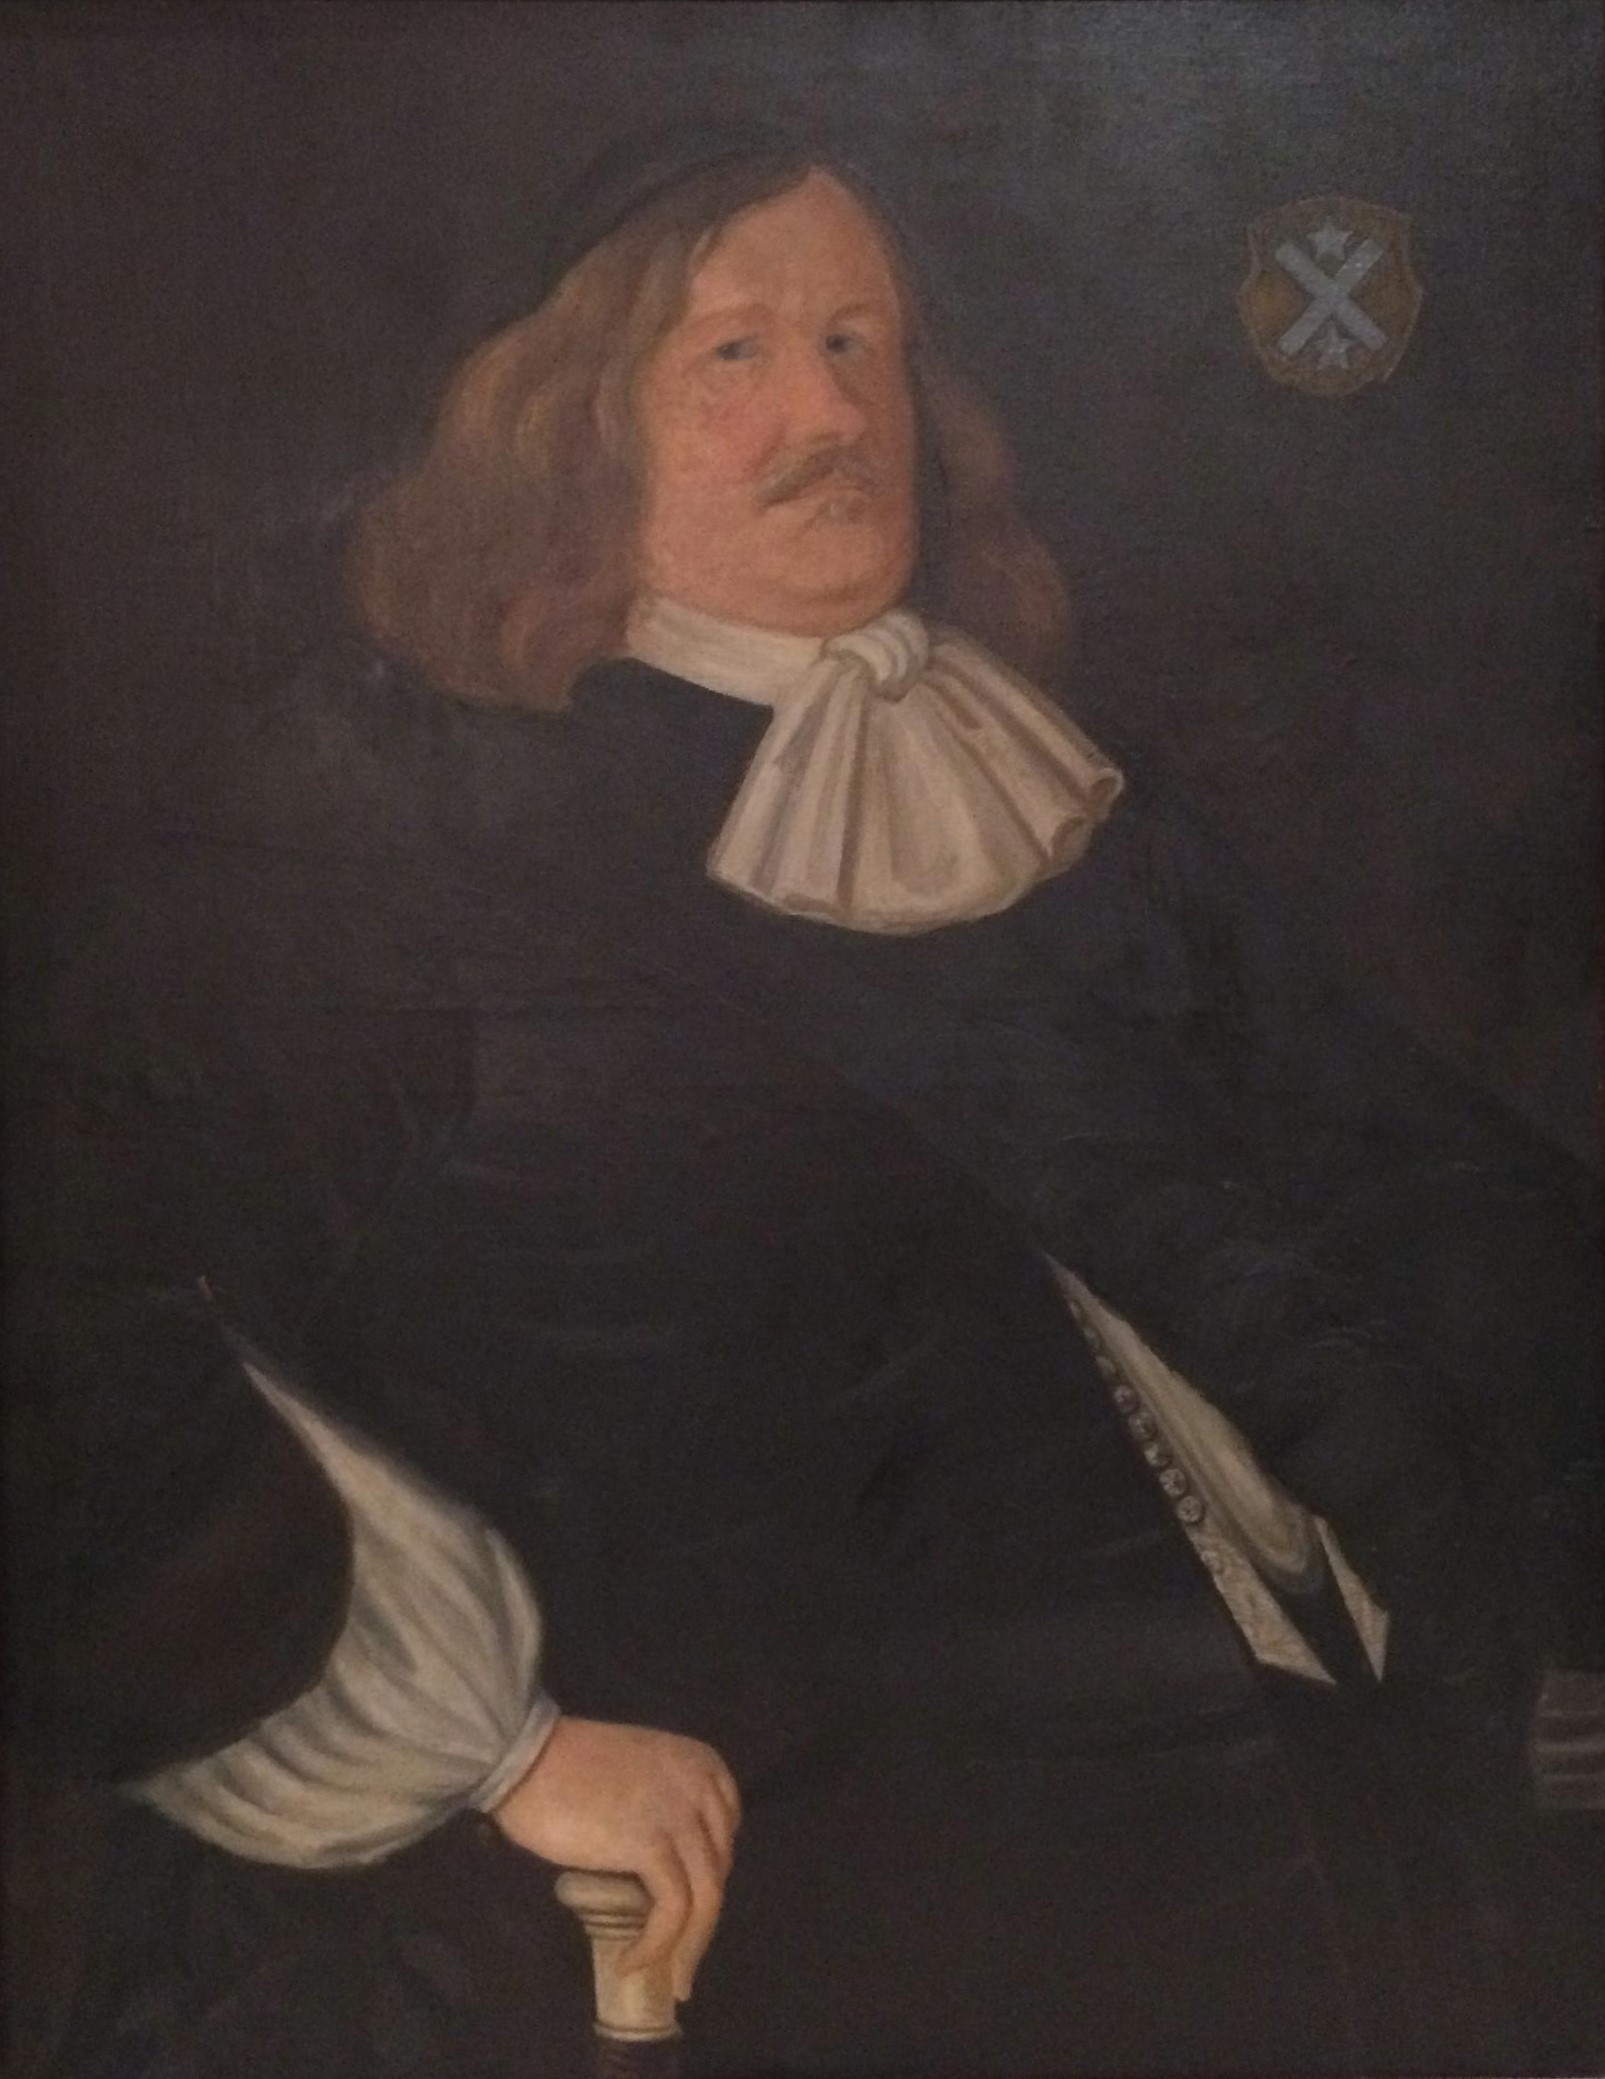 målning föreställande en man i halvlångt hår och eleganta 1600-talskläder